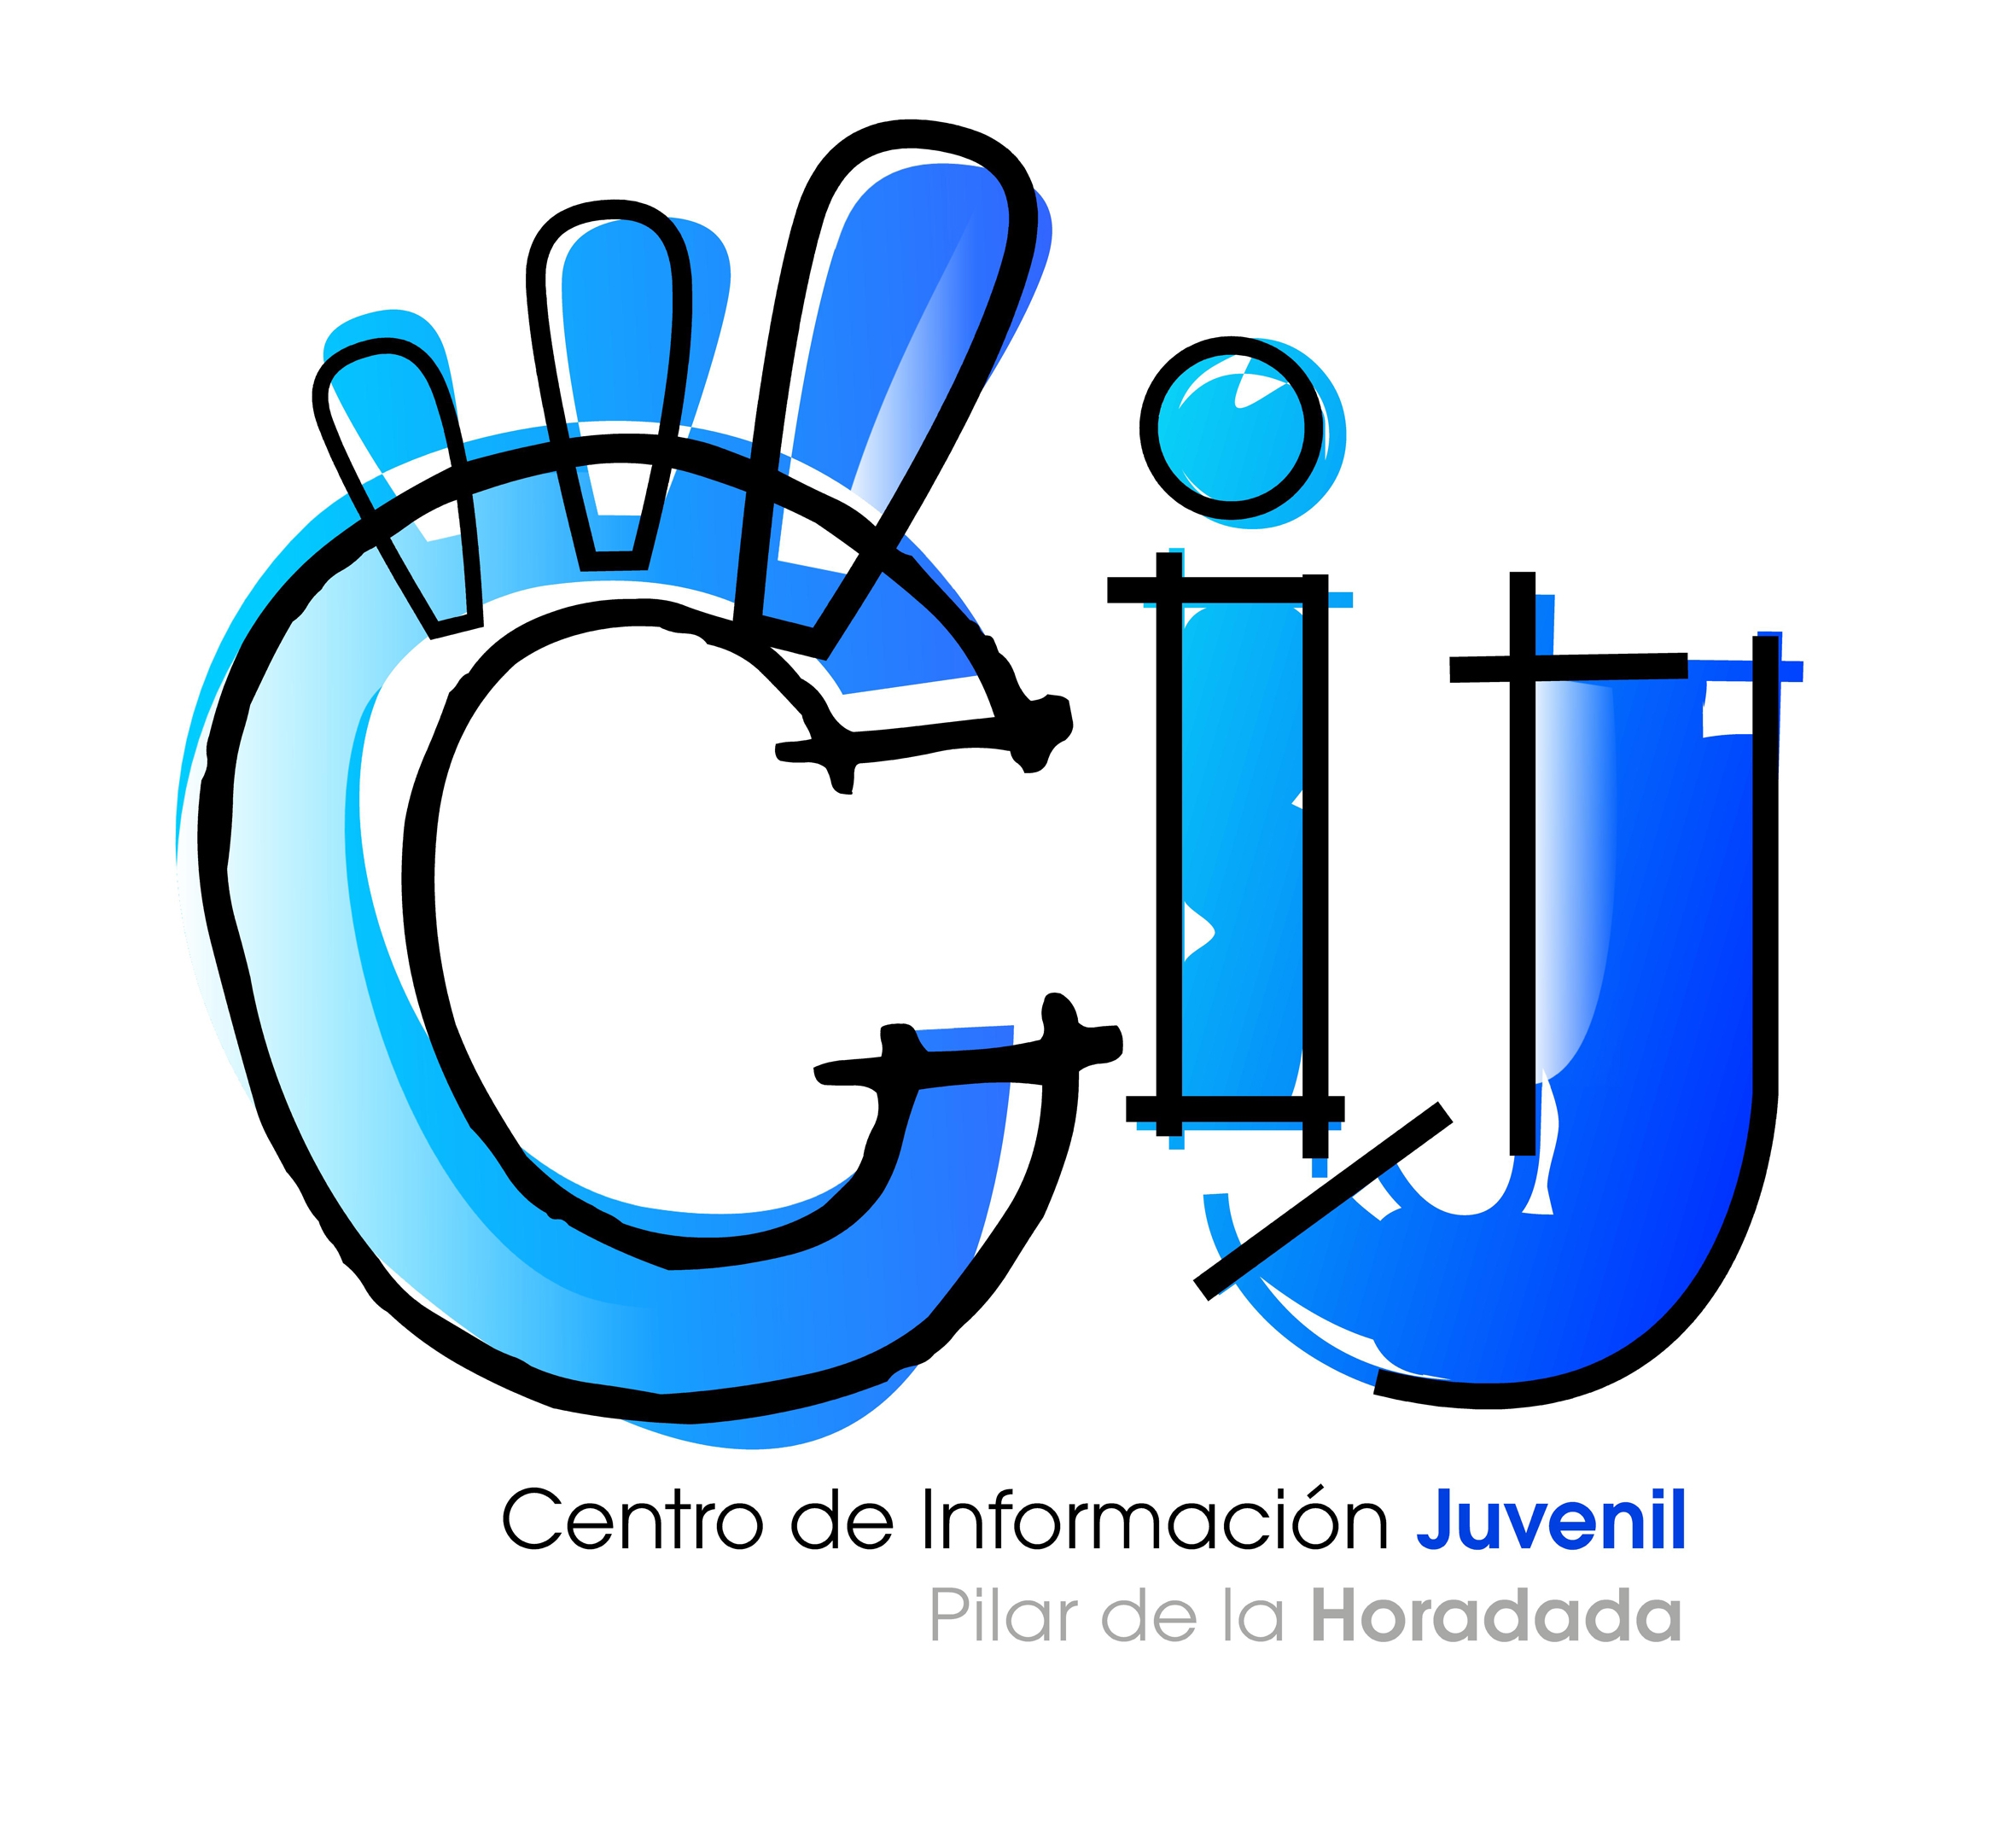 Taller i trucs d'informàtica per a joves en Pilar de la Horadada